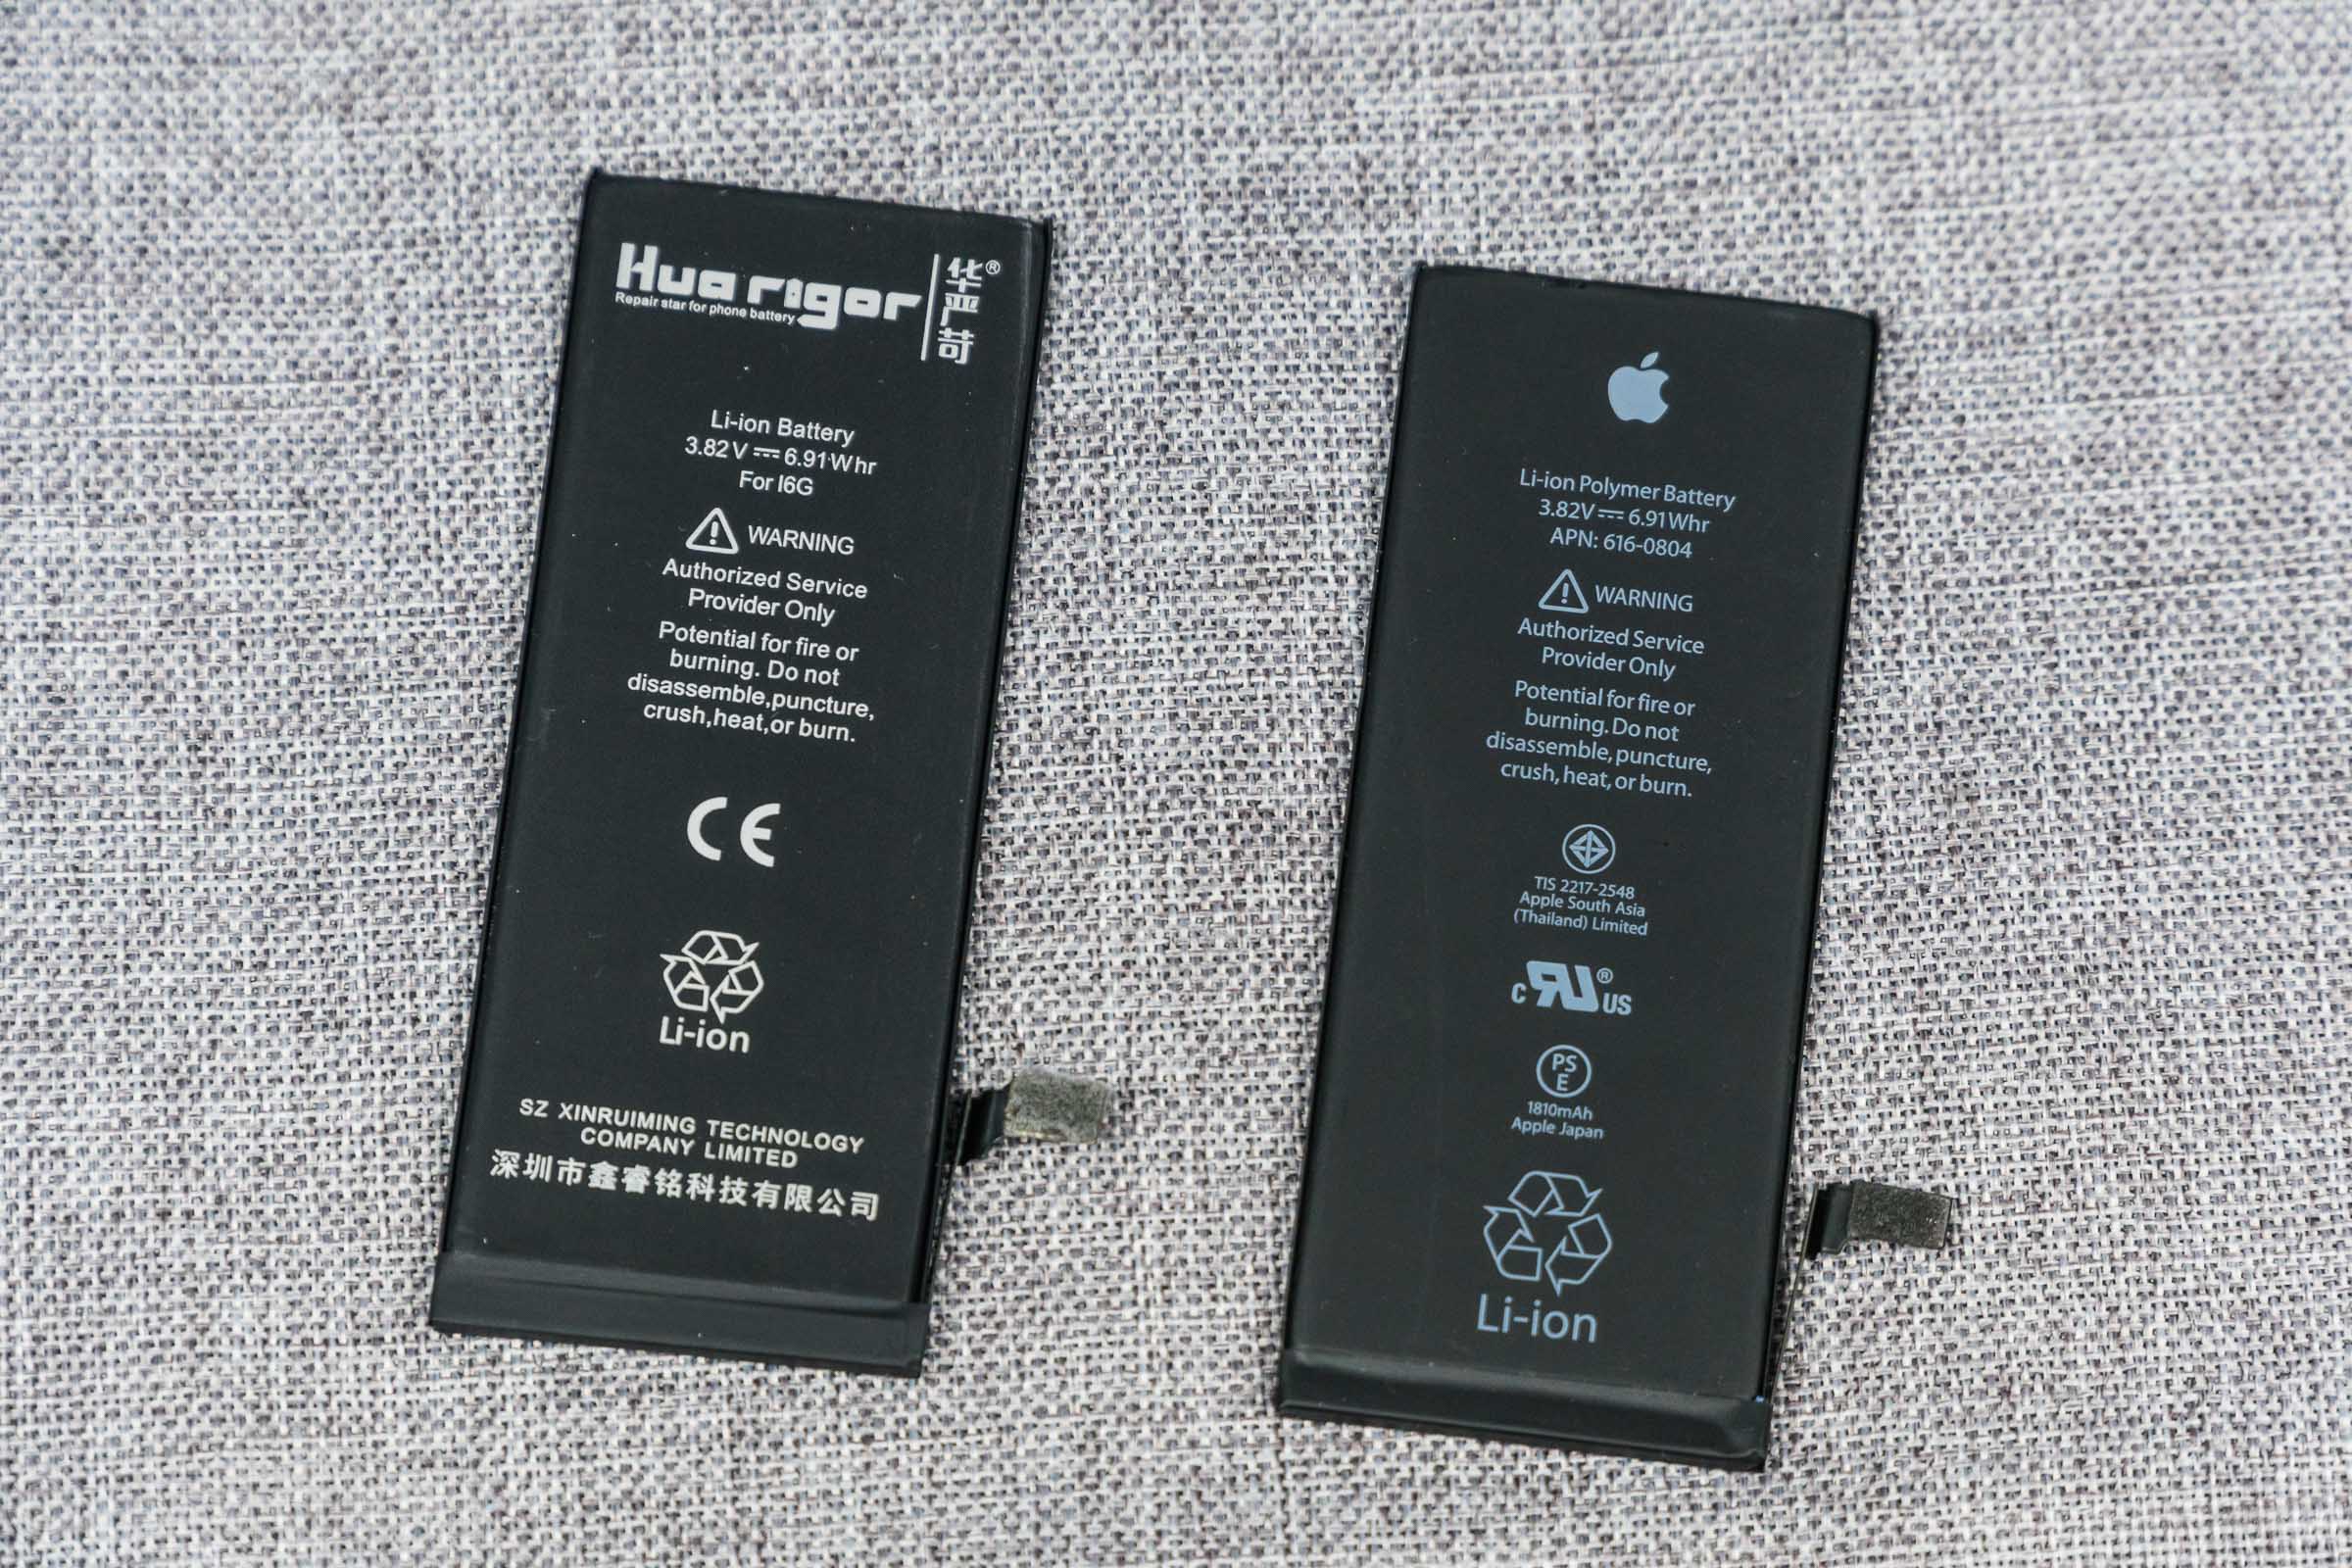 【相应缘】苹果原装电池鉴别 警惕德赛最新日期电池 - 知乎